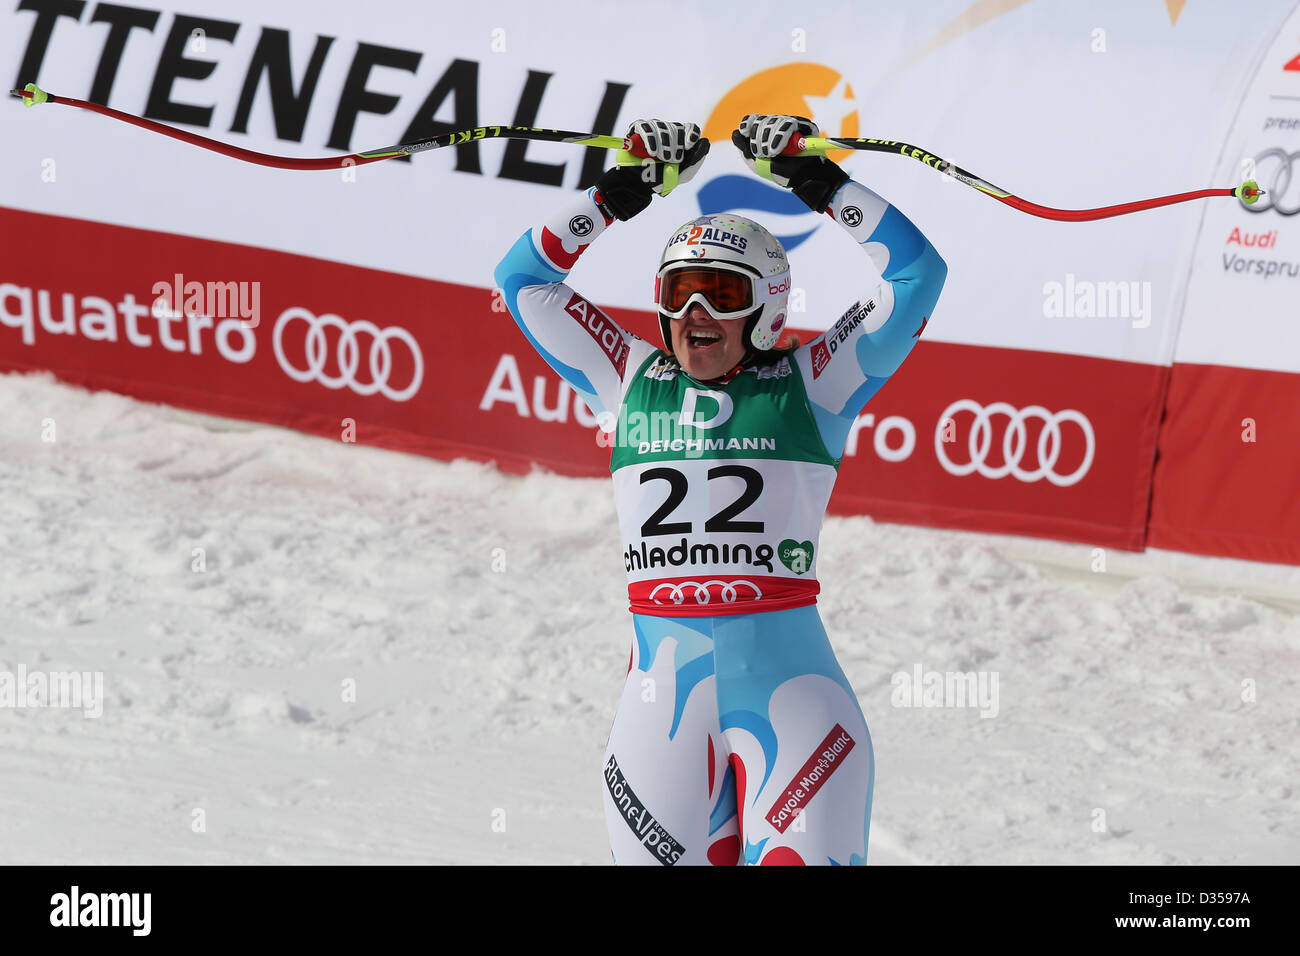 10.02.2013, Schladming, Autriche. Marion Rolland (Fra) célèbre sur la ligne d'arrivée au cours de la descente dames des Championnats du Monde FIS de Ski Alpin 2013 Banque D'Images